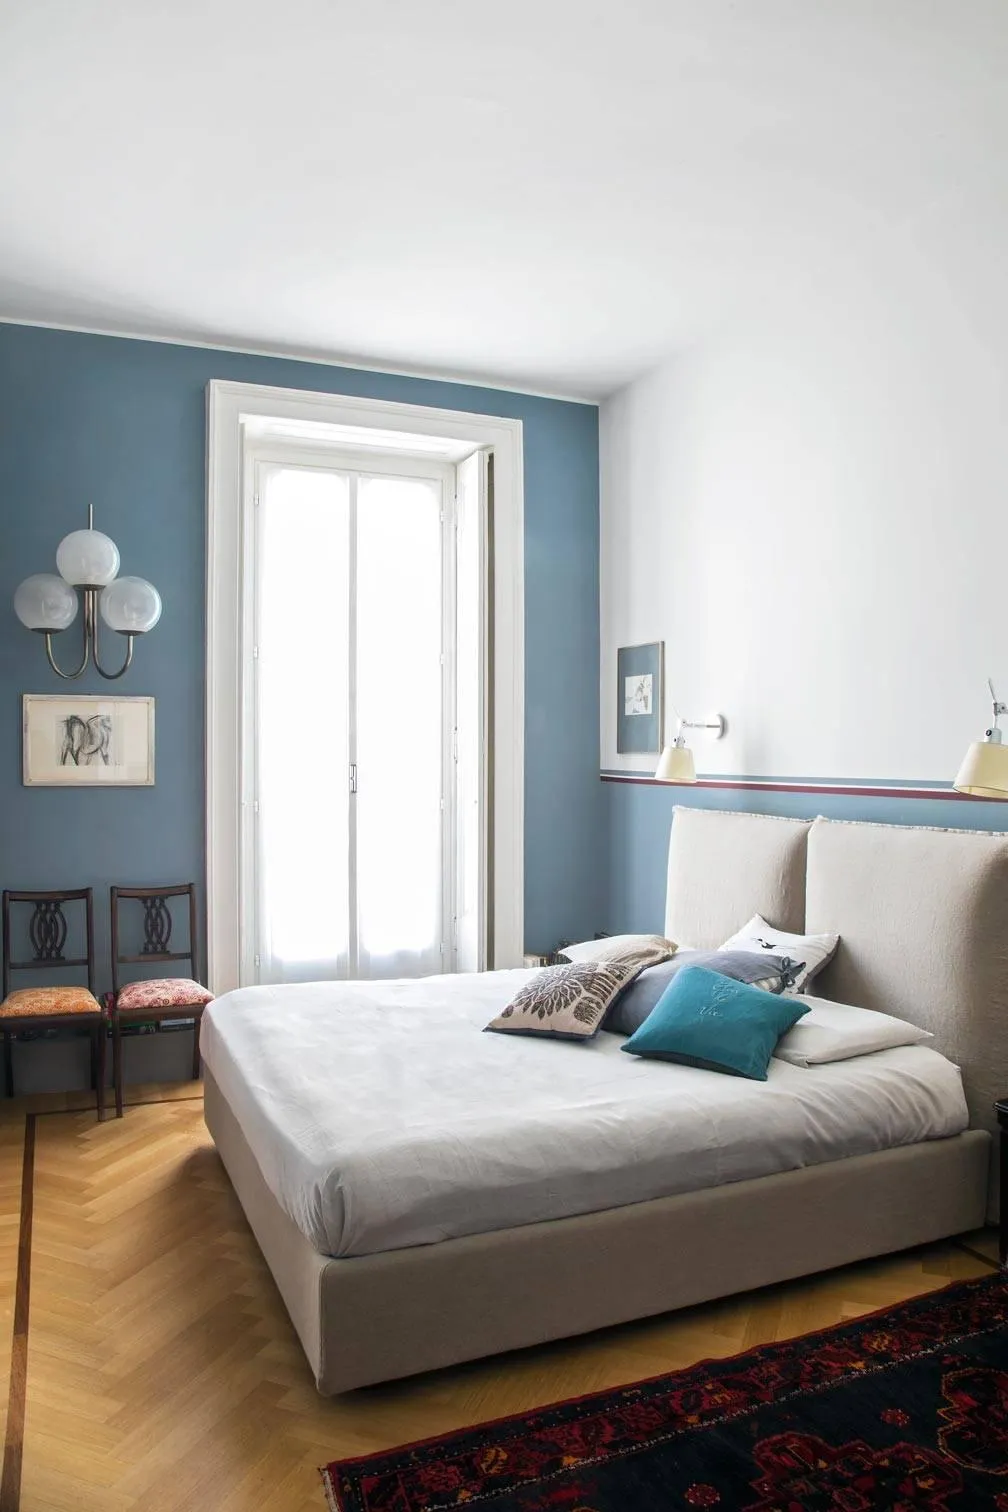 Camera da letto in stile industriale: idee e consigli